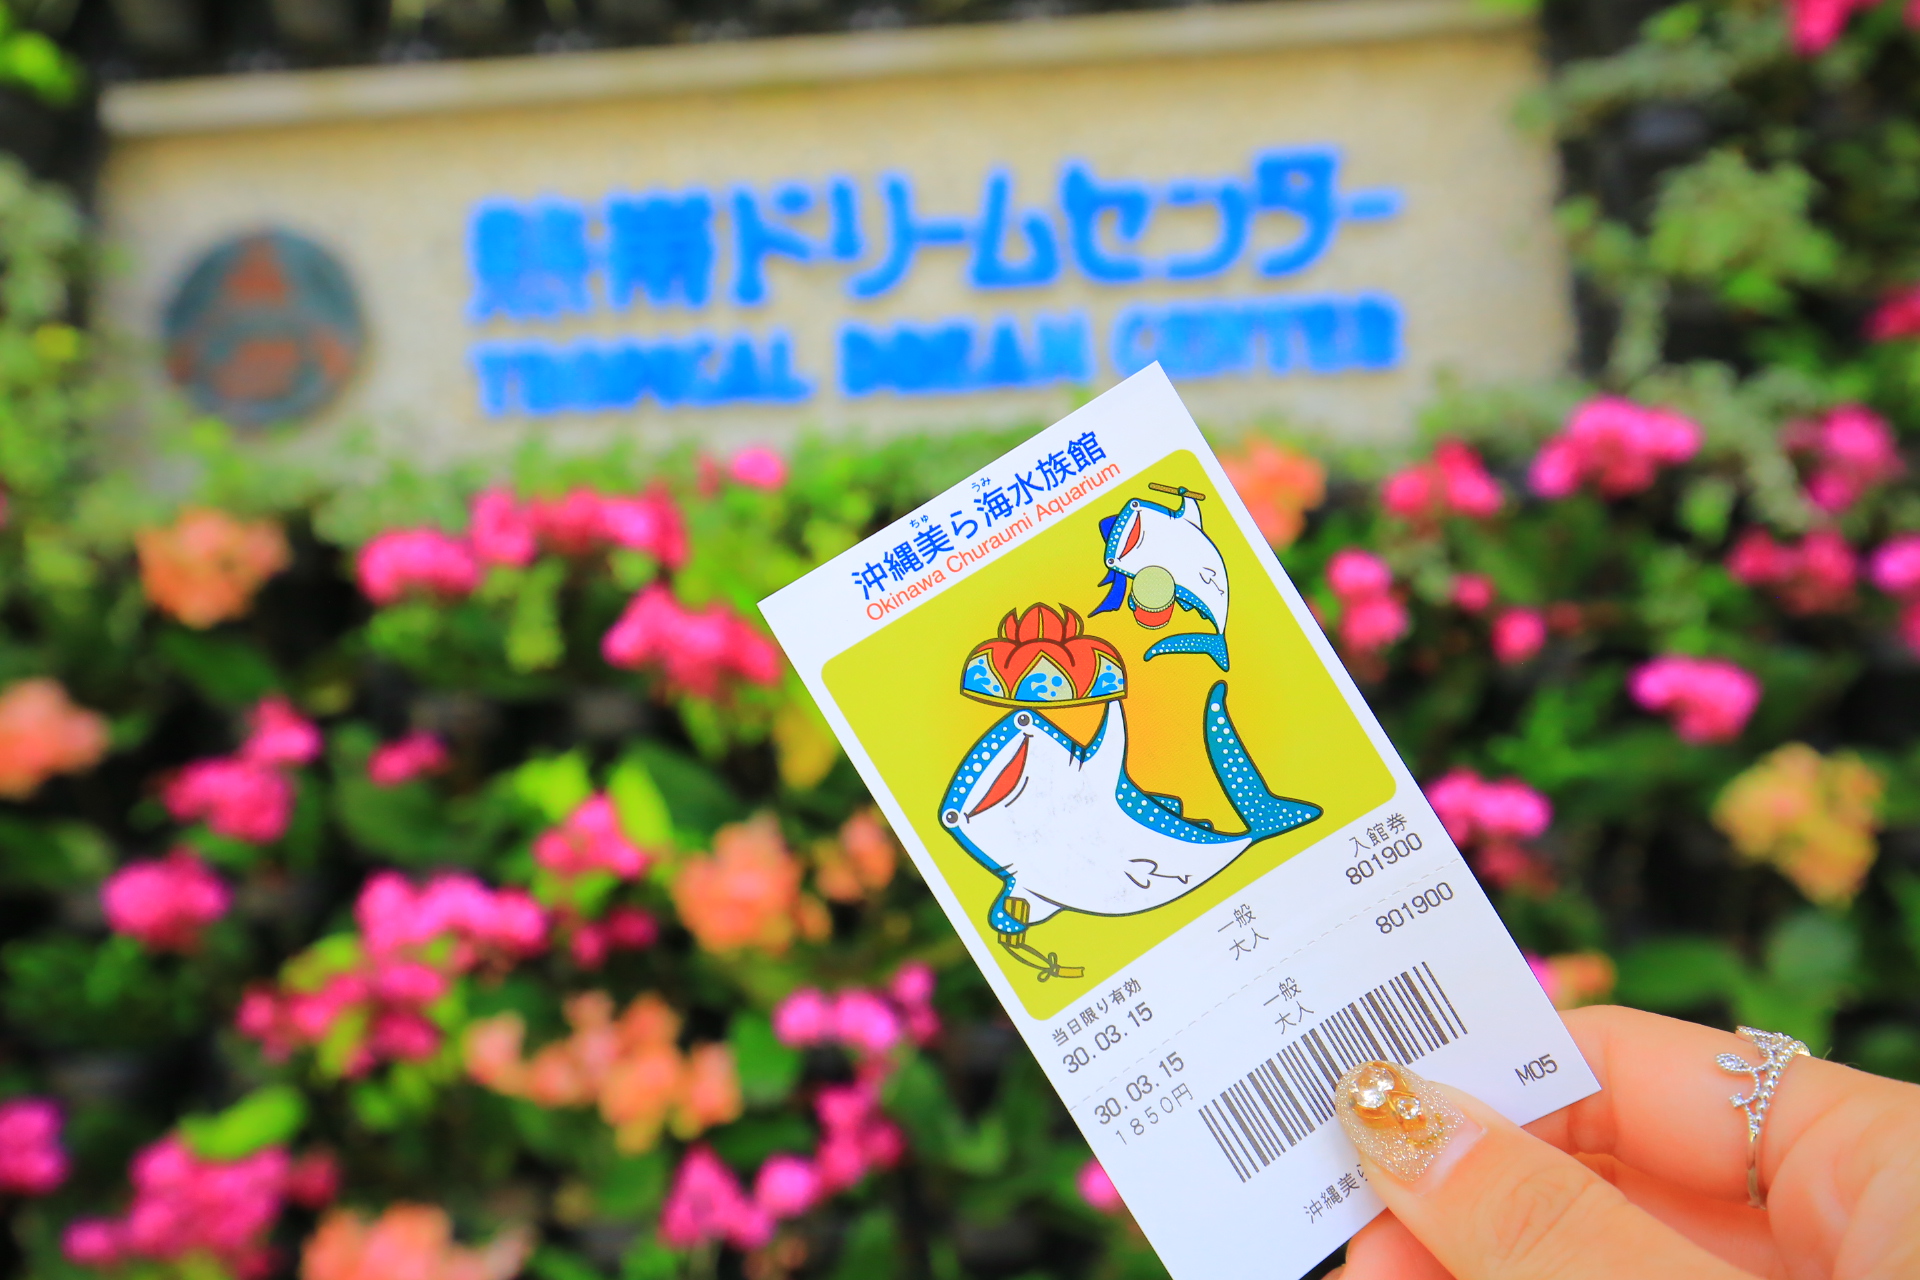 【沖繩景點】海洋博公園一日遊,可不只有水族館,超多好玩設施一日遊攻略 @小環妞 幸福足跡